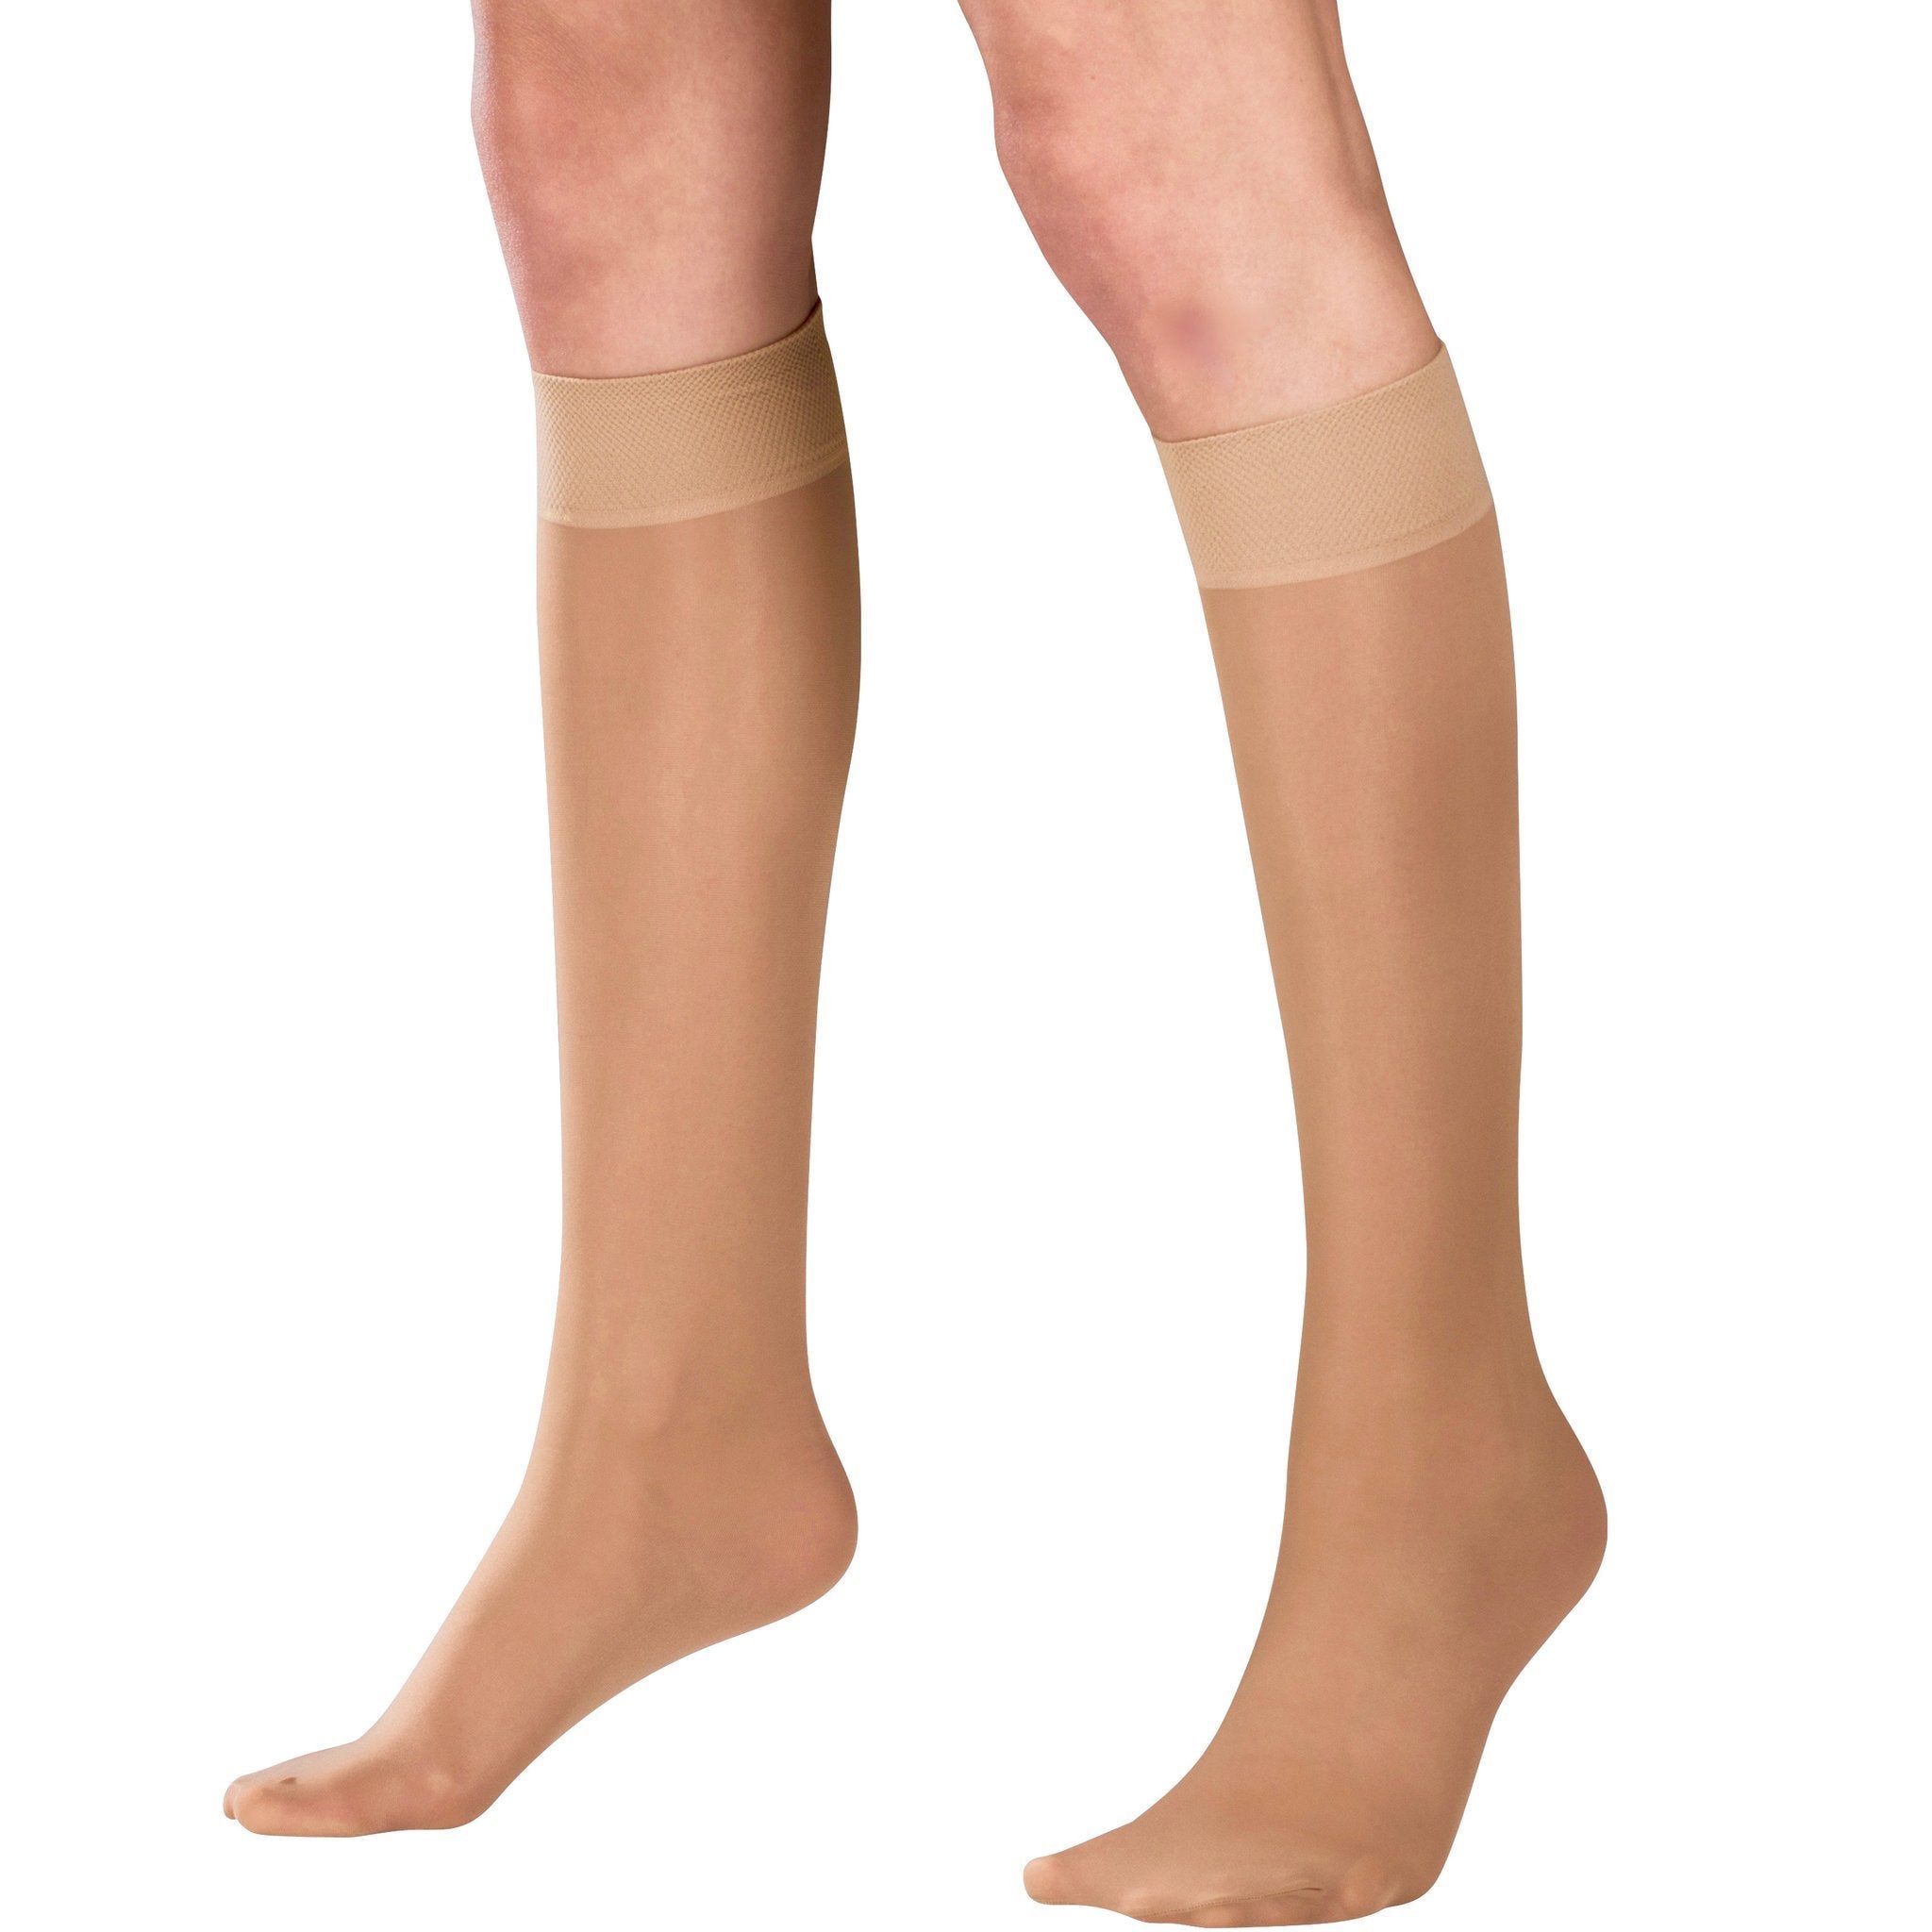 AMZAM Thigh Compression Sleeves for Women & Men, Beige Medium 